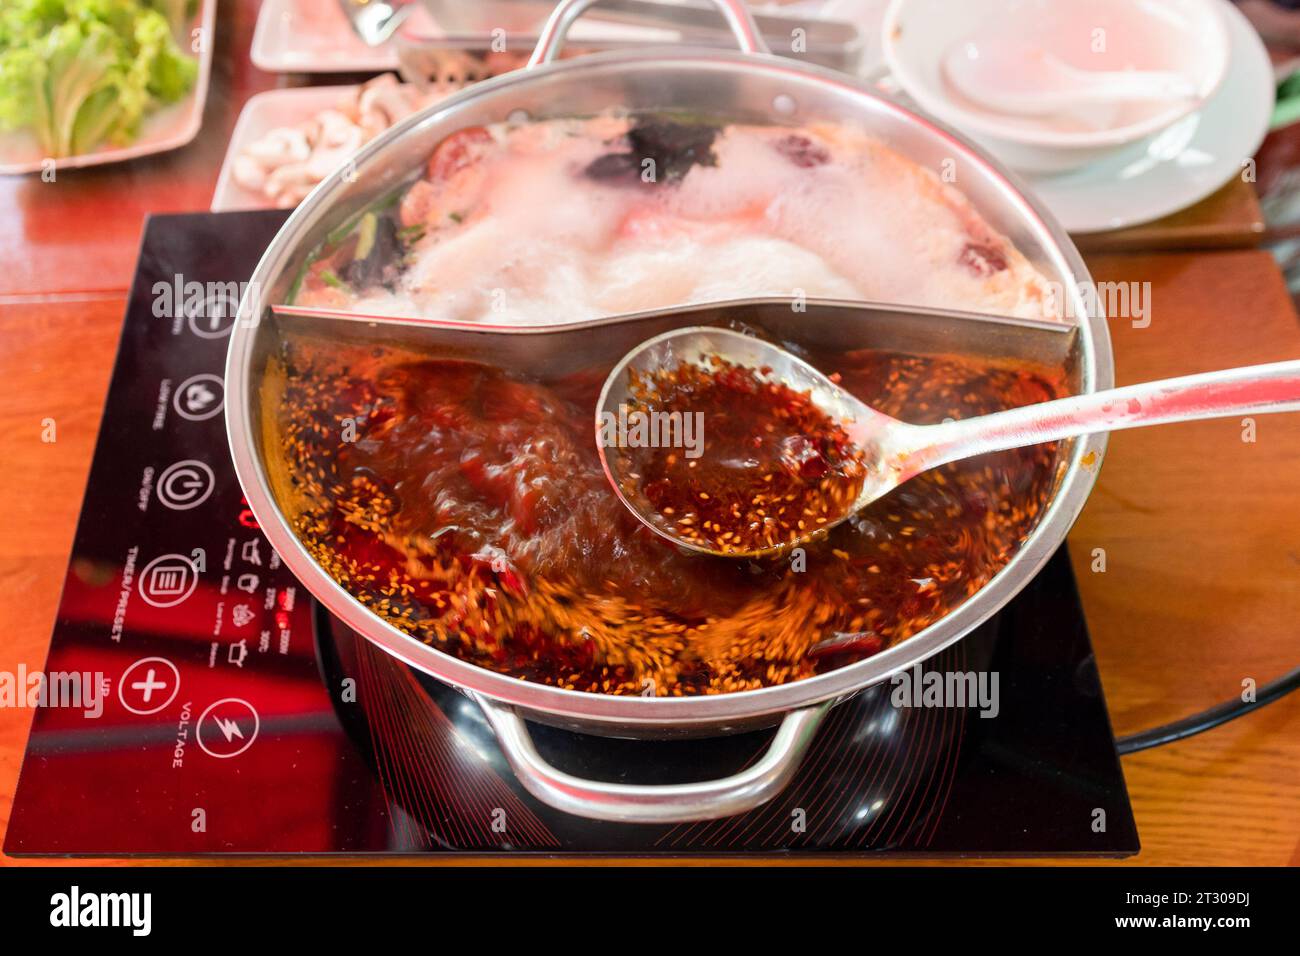 cucina cinese - cucchiaio con brodo speziato sopra il wok durante la cottura della zuppa di pentole calde Foto Stock